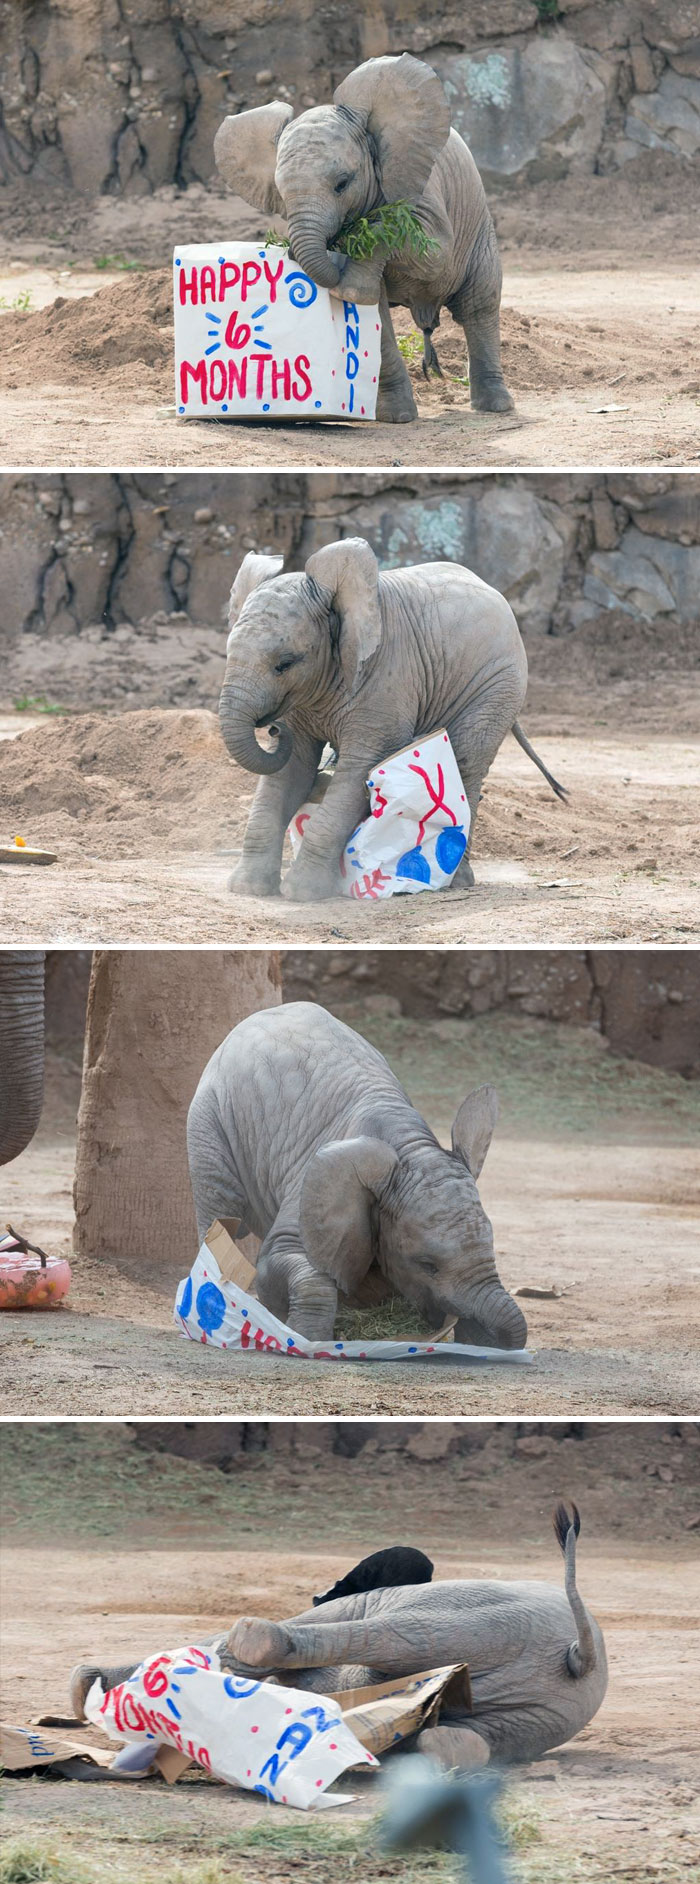 Baby elephant celebrating 6 month birthday